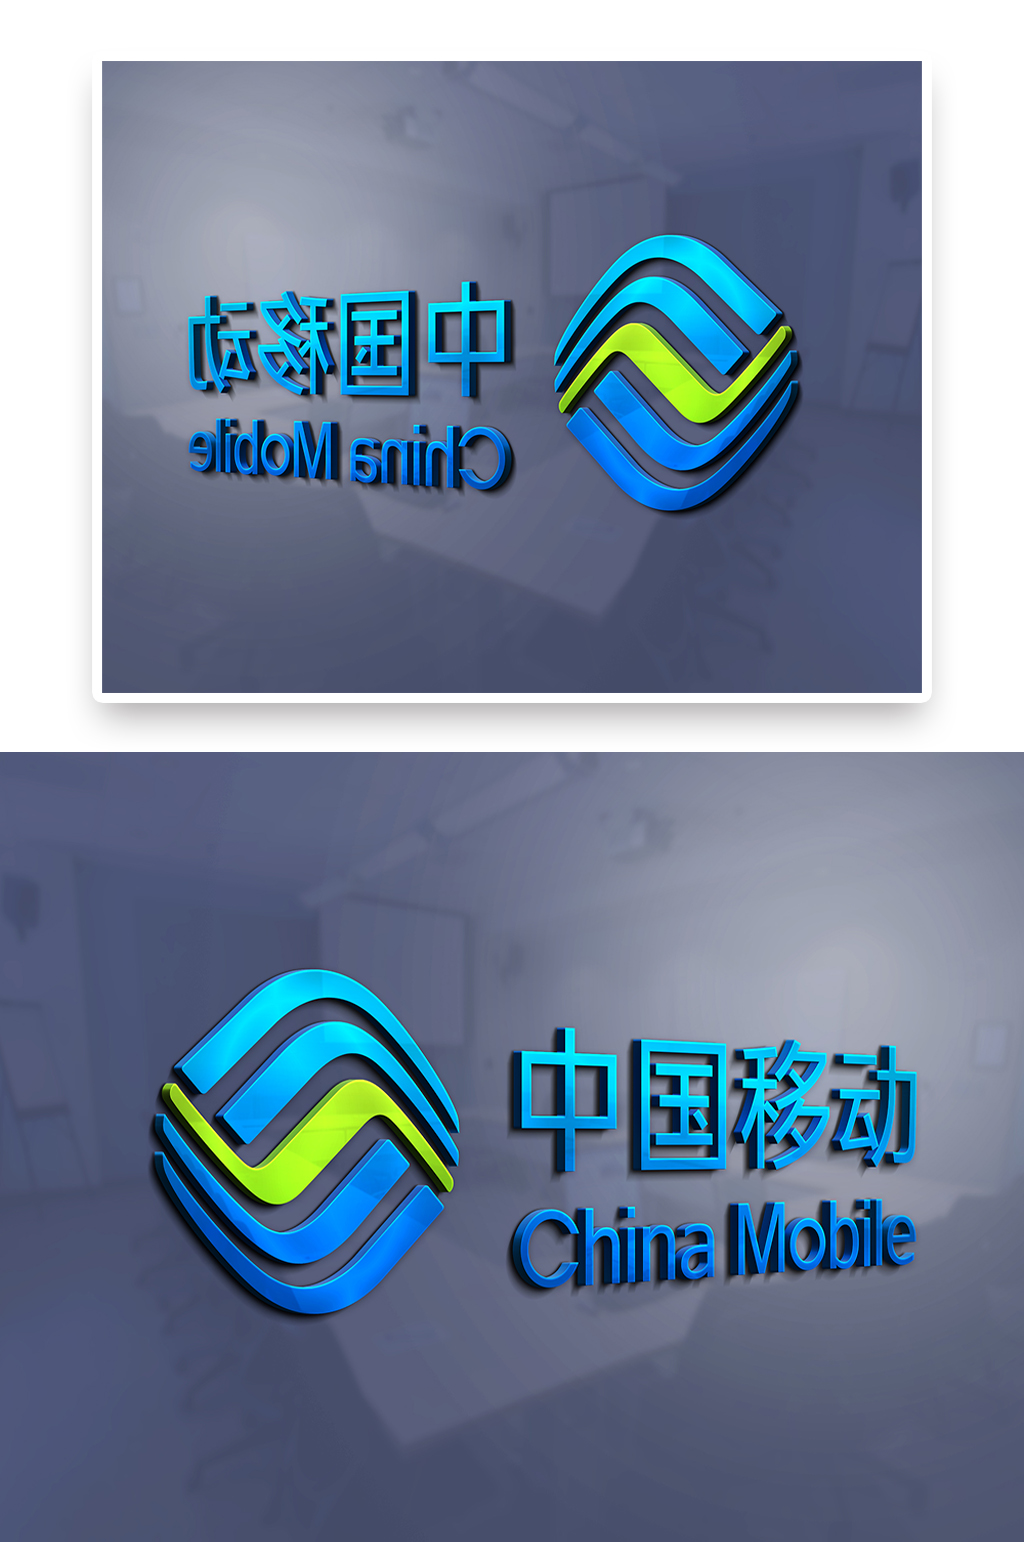 中国移动标志图片含义图片